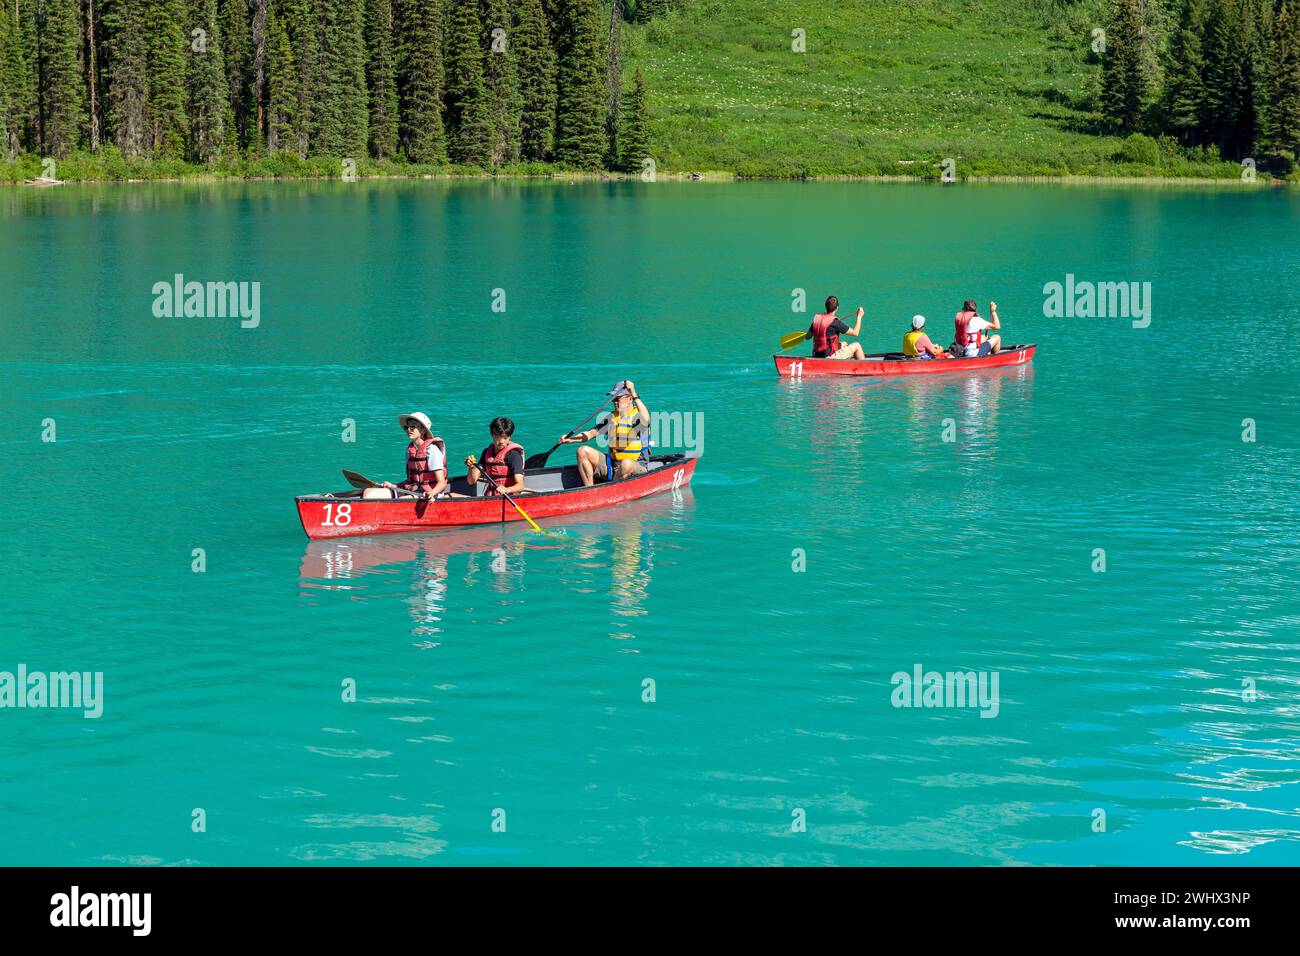 People kayaking on Emerald Lake, Yoho national park, British Columbia, Canada. Stock Photo